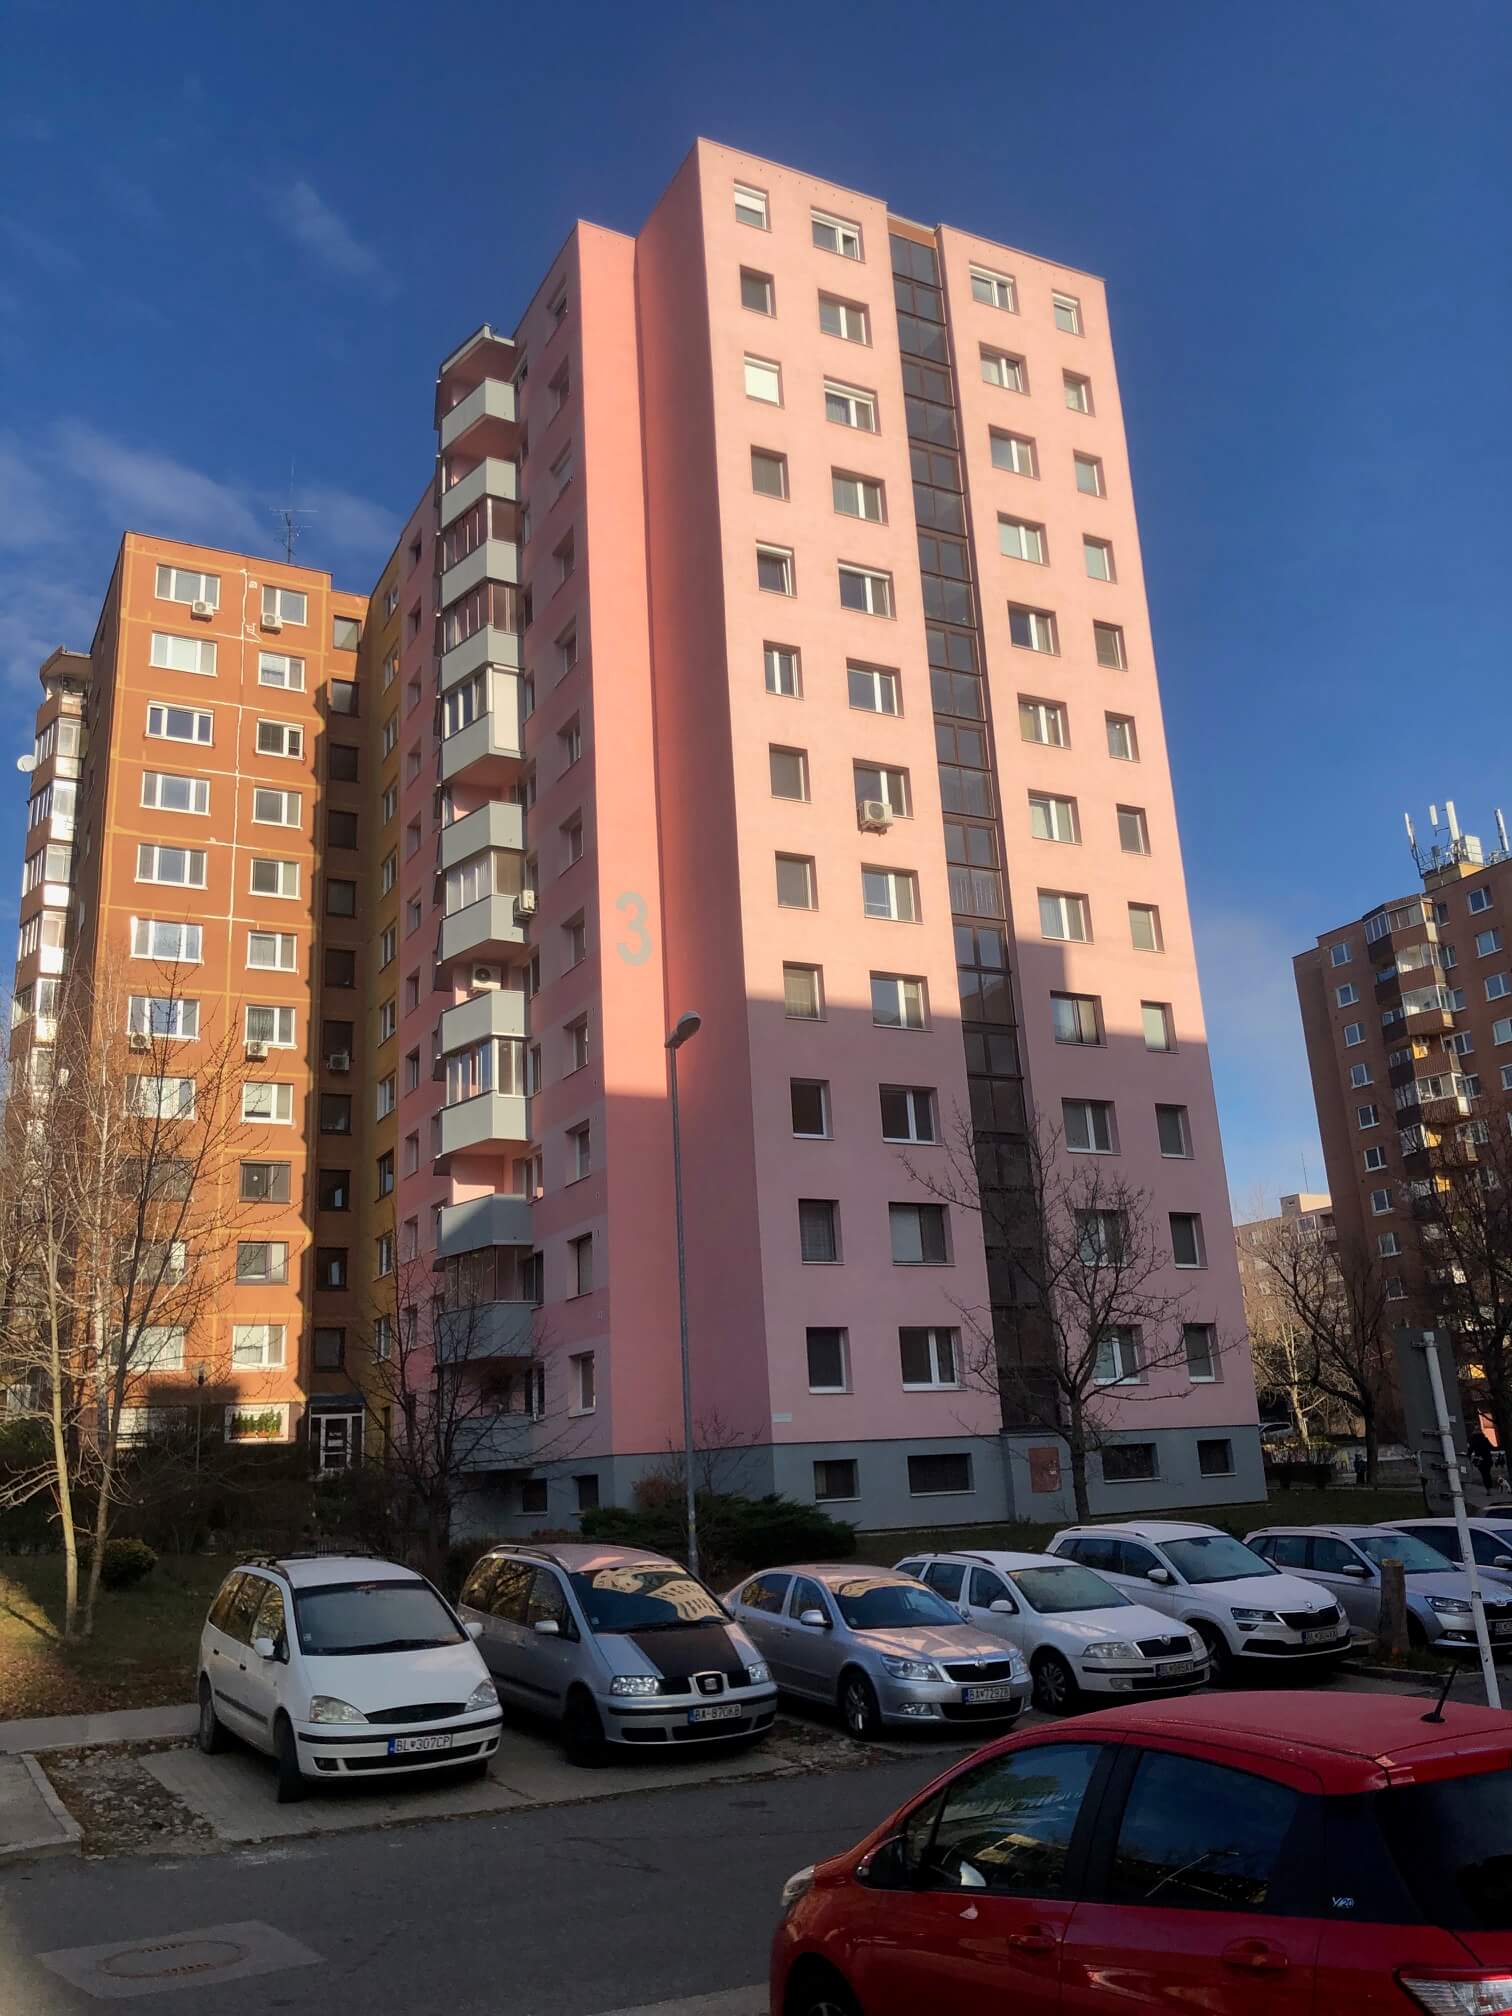 Predané: Exkluzívne na predaj 3 izbový byt, Devínska Nová Ves, Jána Poničana 3, 65m2, balkon 4m2,klimatizácia-8